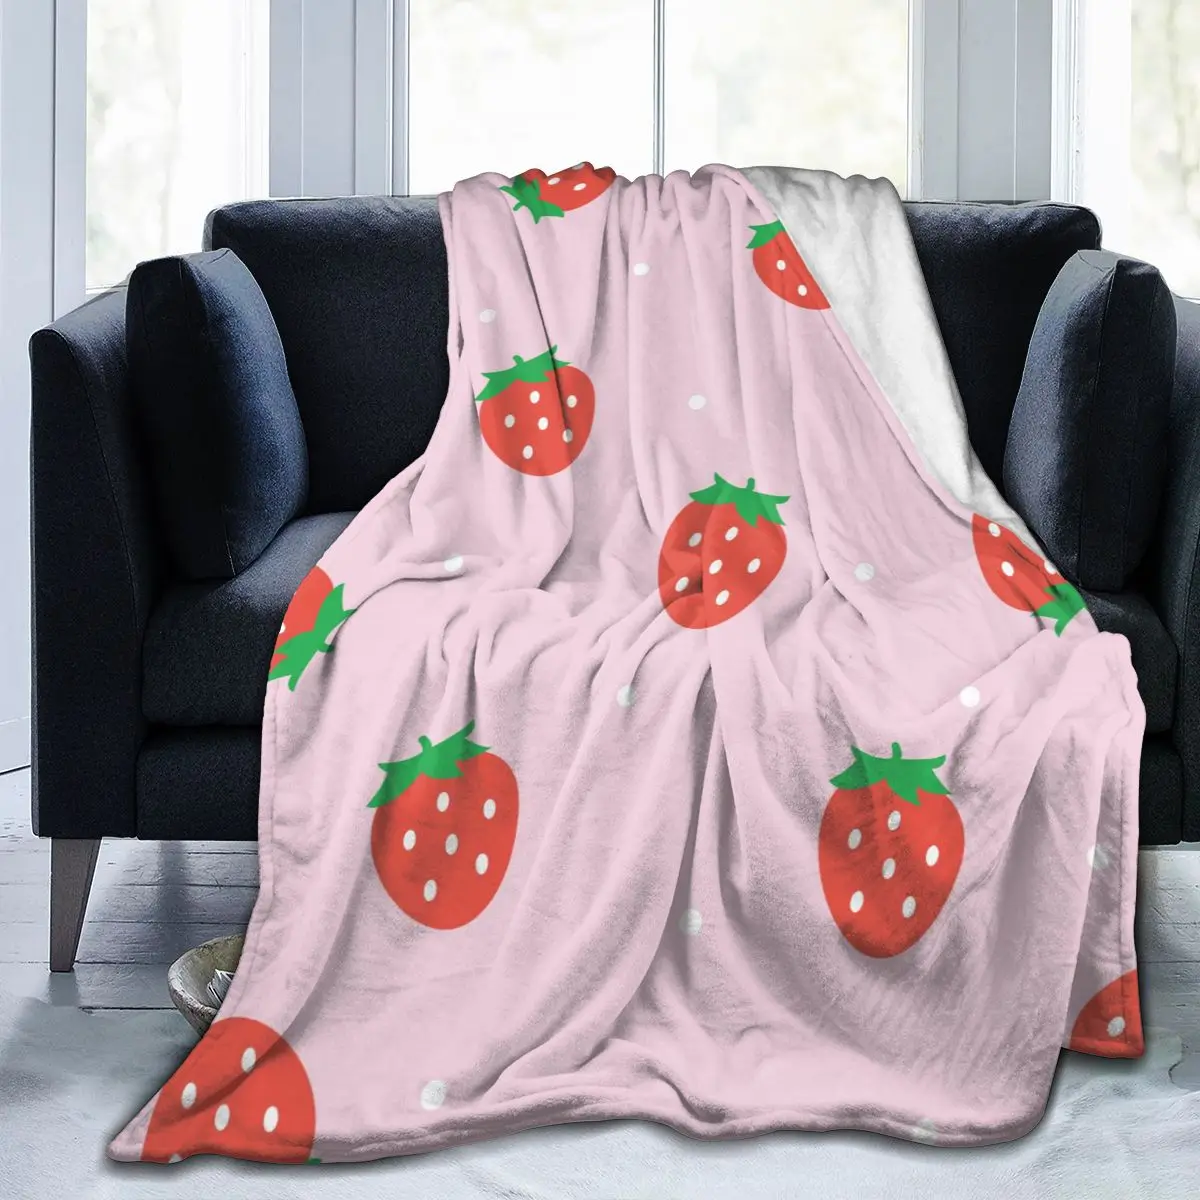 

Фланелевое Одеяло красная клубника любовь ультра-мягкое Флисовое одеяло для банного халата дивана кровати путешествия дома зима весна осе...